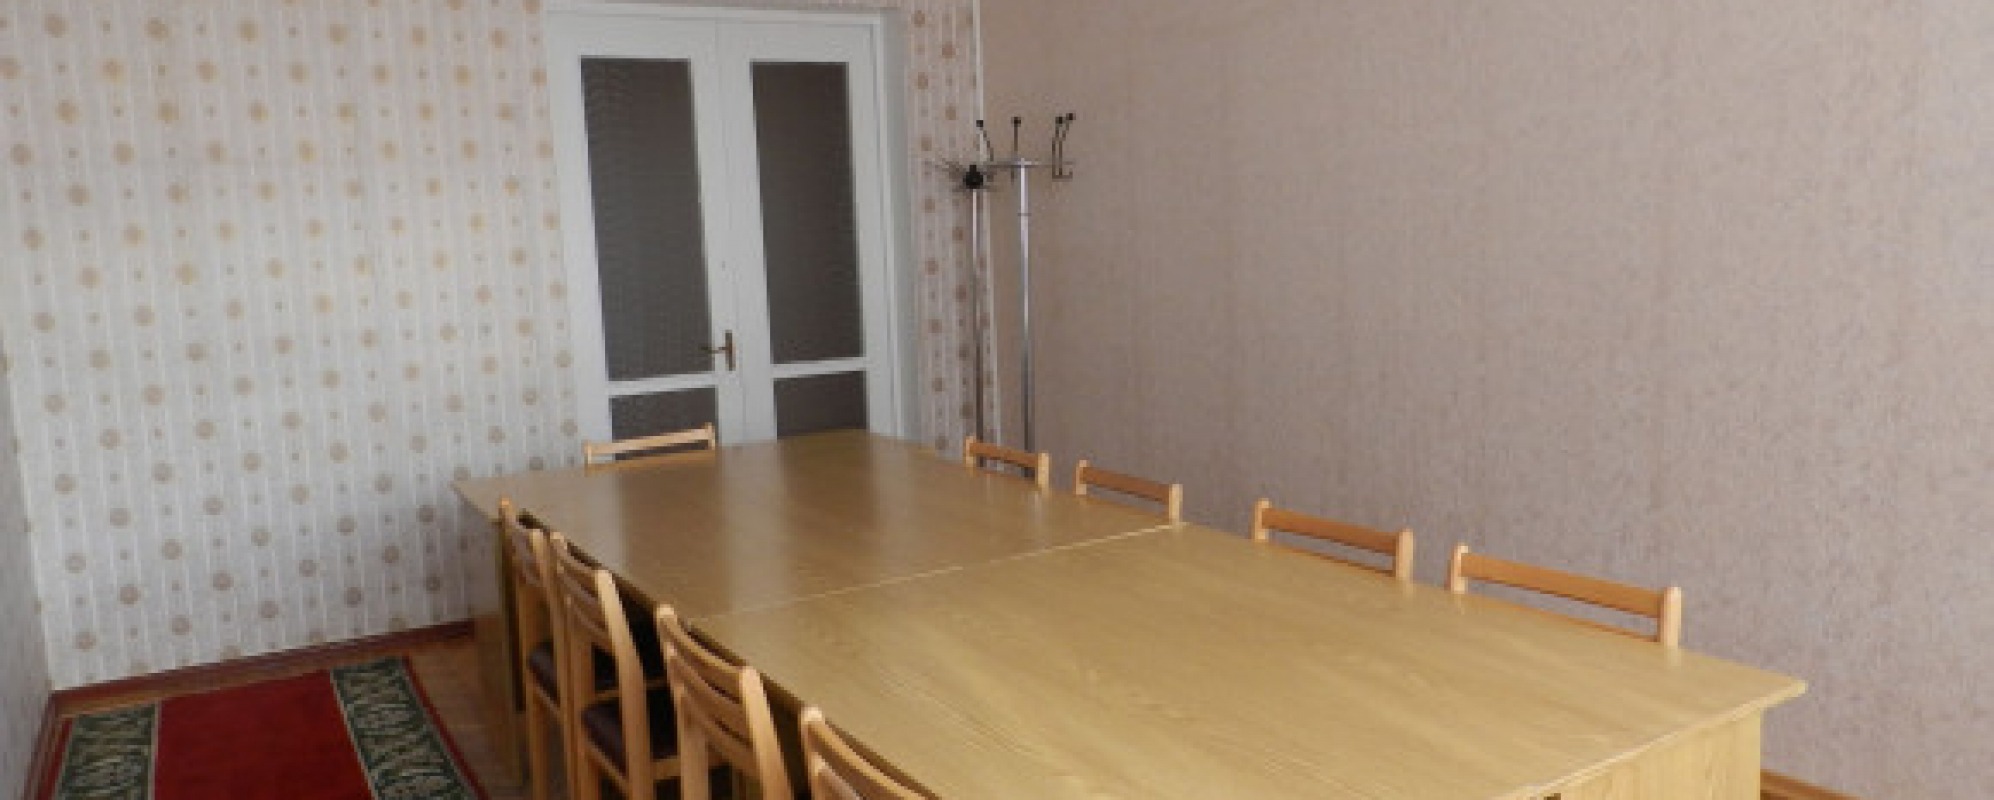 Фотографии комнаты для переговоров Губернский